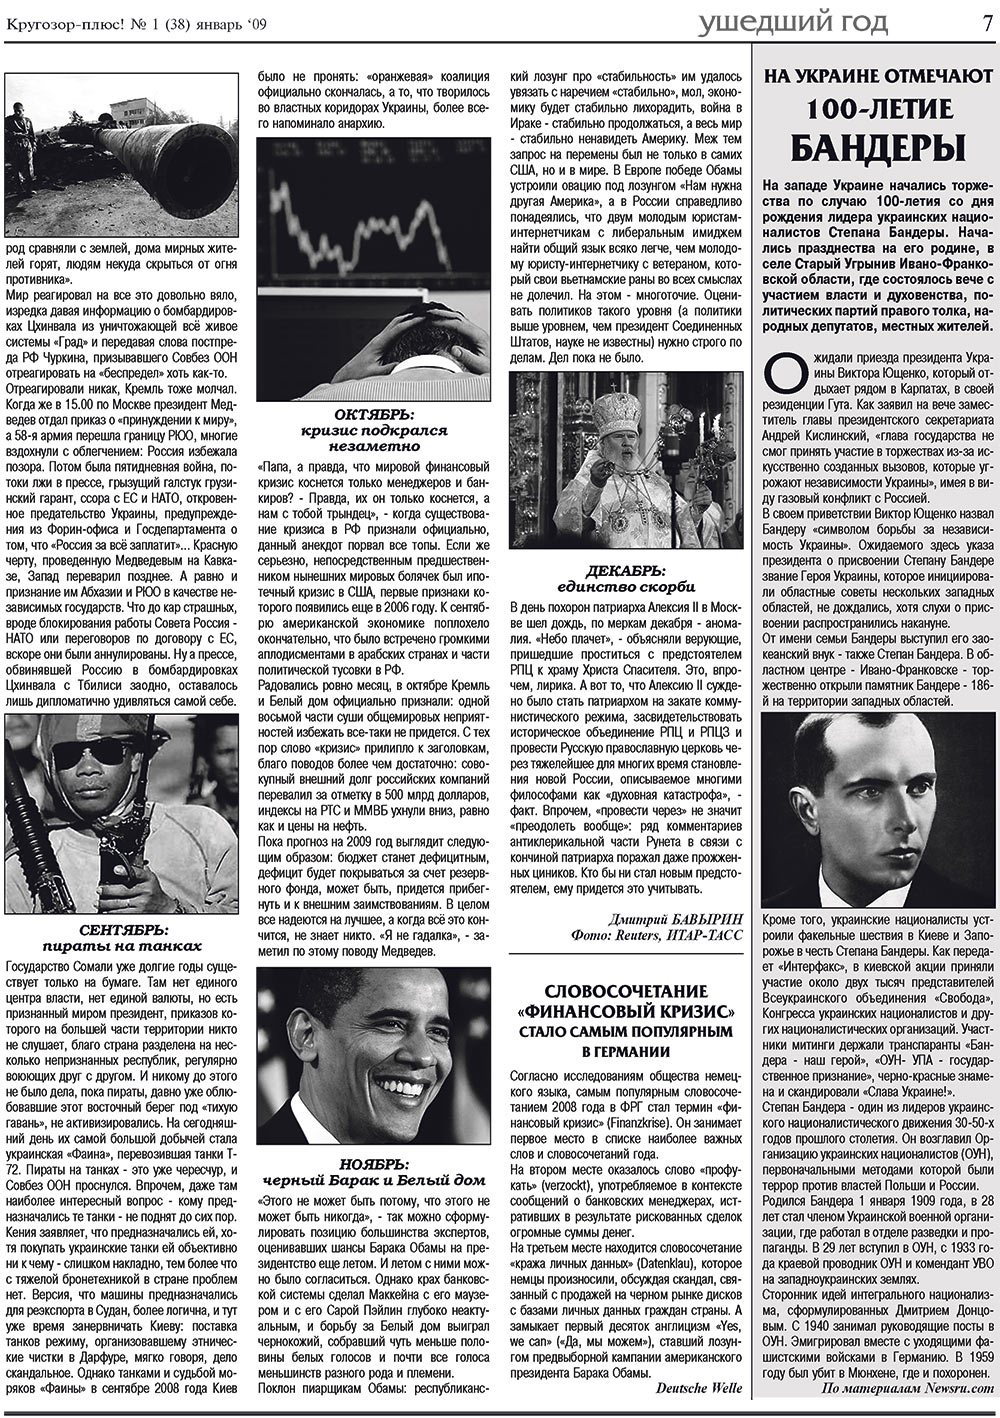 Кругозор плюс!, газета. 2009 №1 стр.7